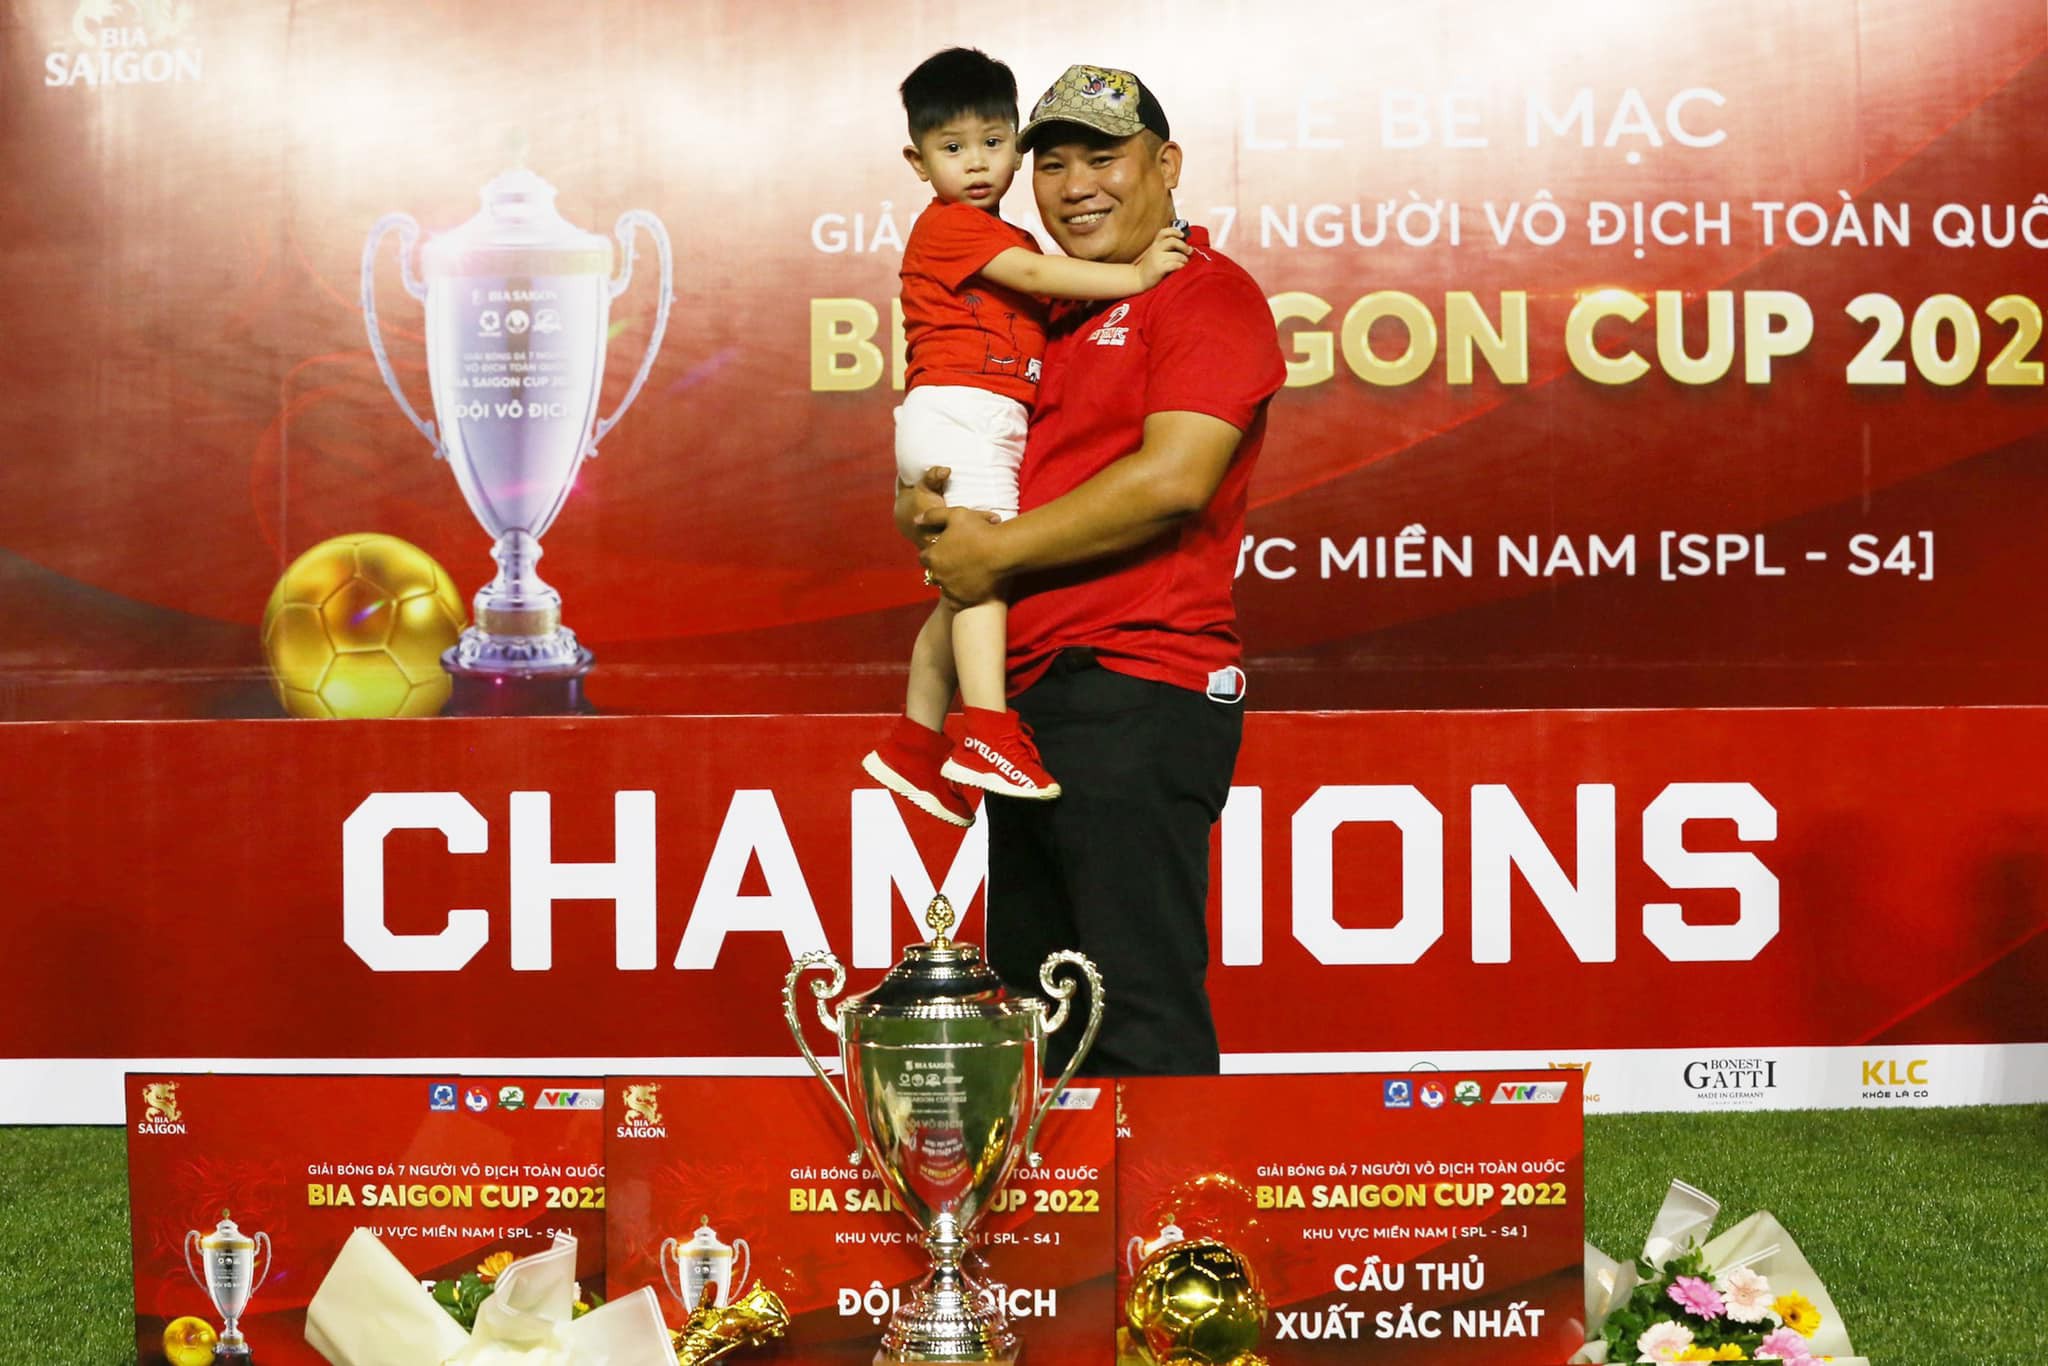 HLV Tuấn Anh “Gấu” chính thức dẫn dắt An Biên FC